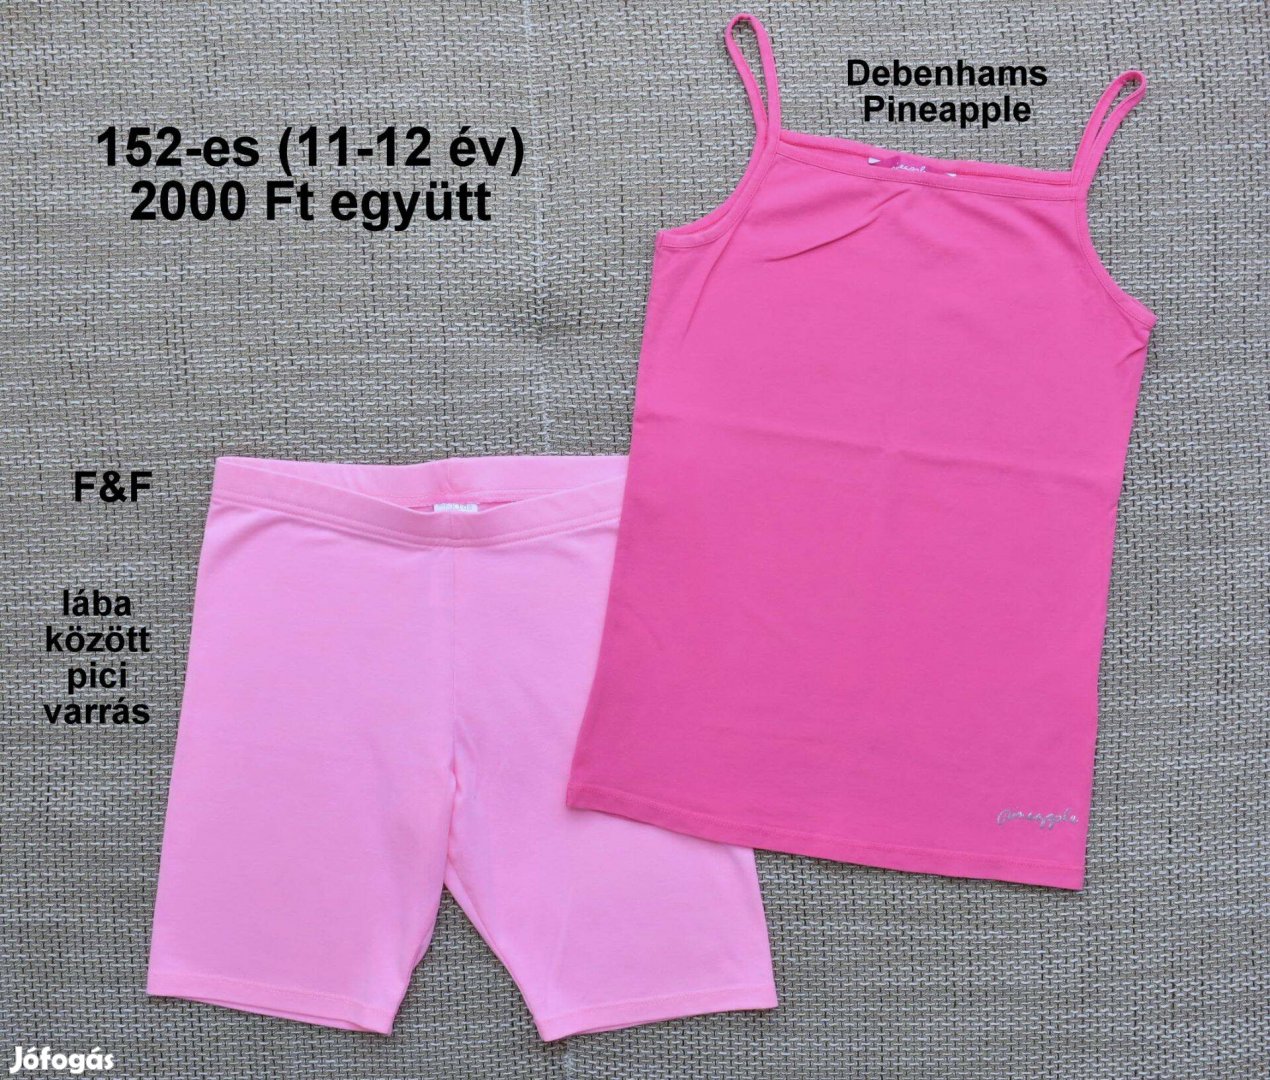 152-es (11-12 év) lányka nyári trikó, rövidnadrág, tunika, fürdőruha